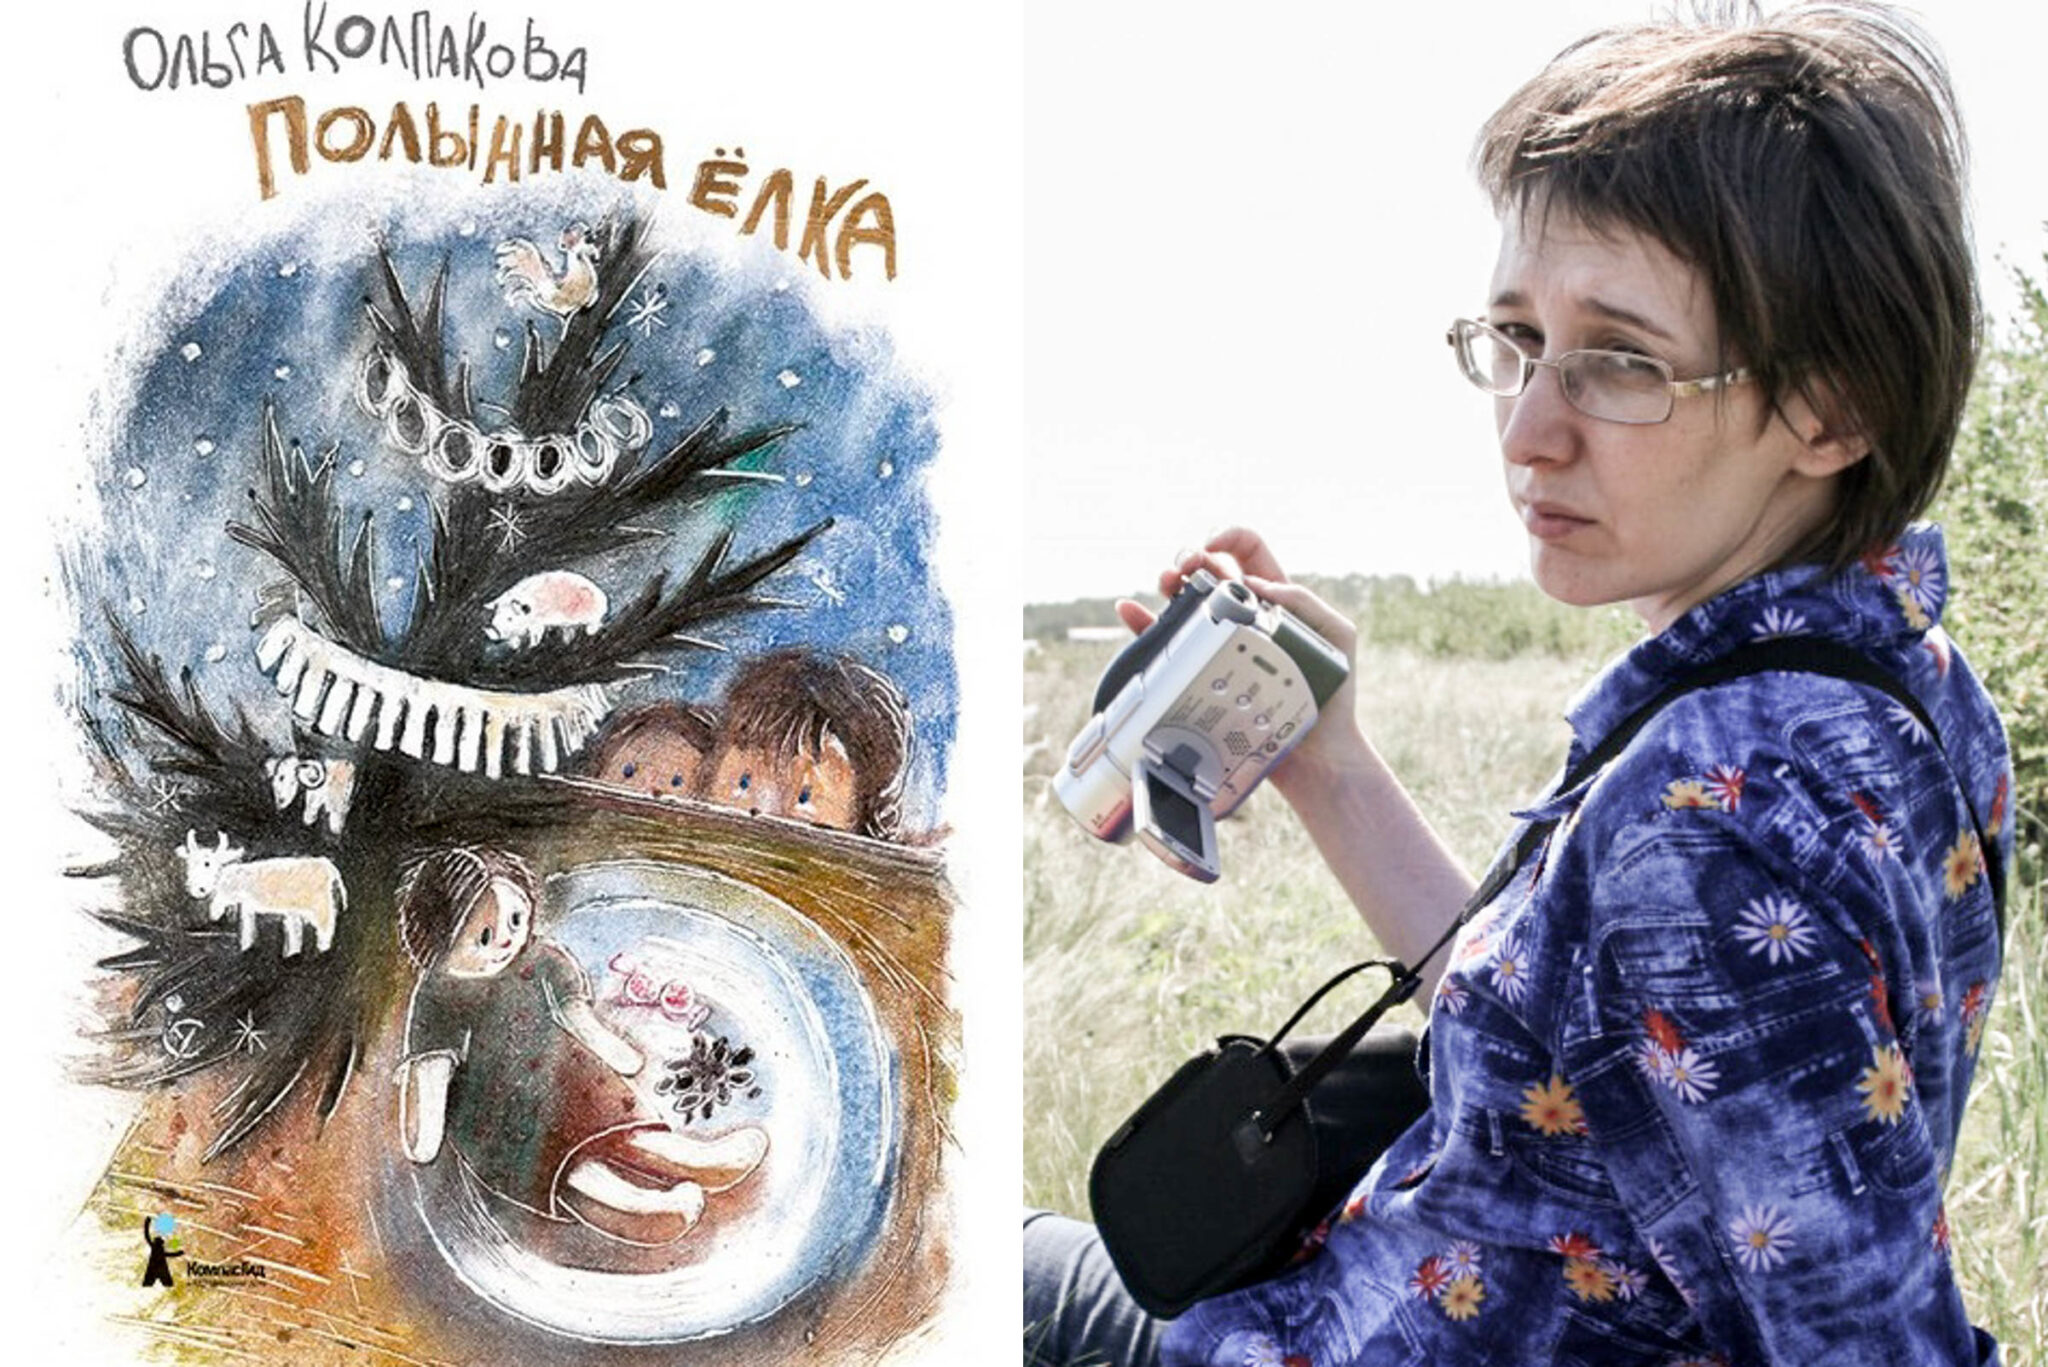 Обложка книги «Полынная елка» и автор Ольга Колпакова. Фотографии из ее аккаунта «ВКонтакте».